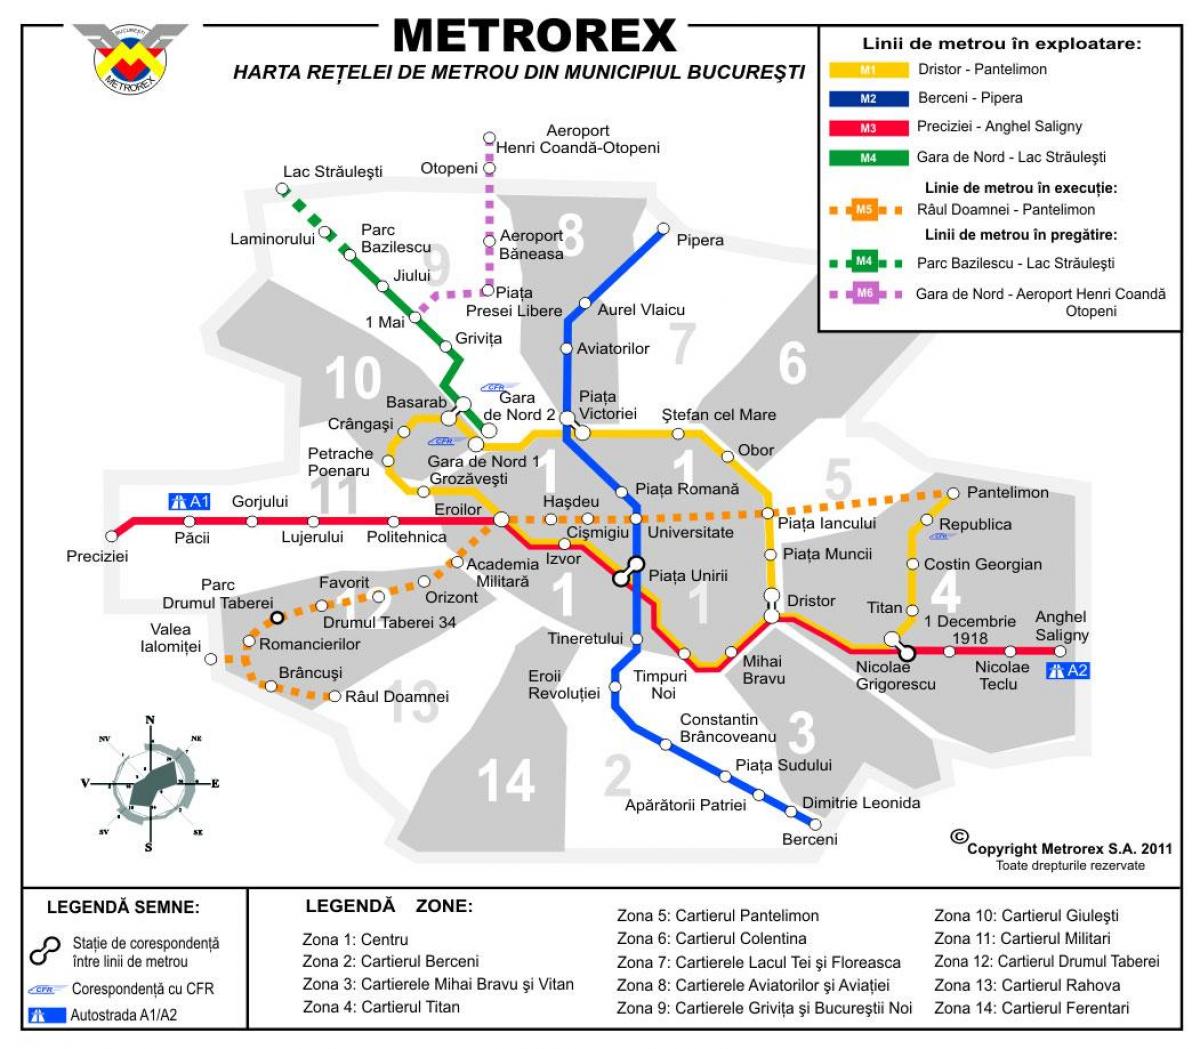 Karte metrorex 